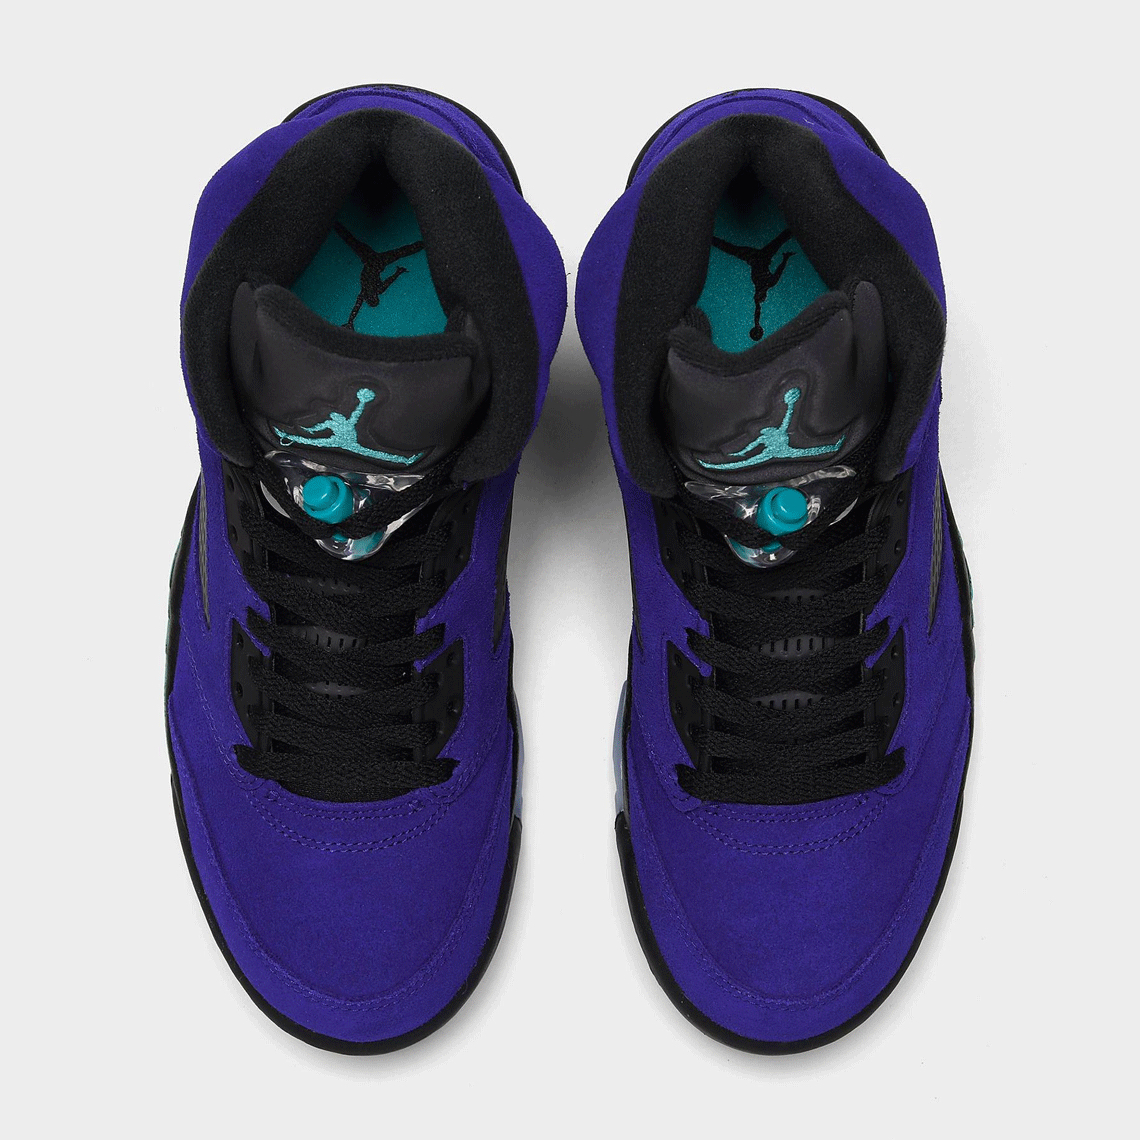 Air Jordan 5 Purple Grape 136027-500 Release Date | SneakerNews.com